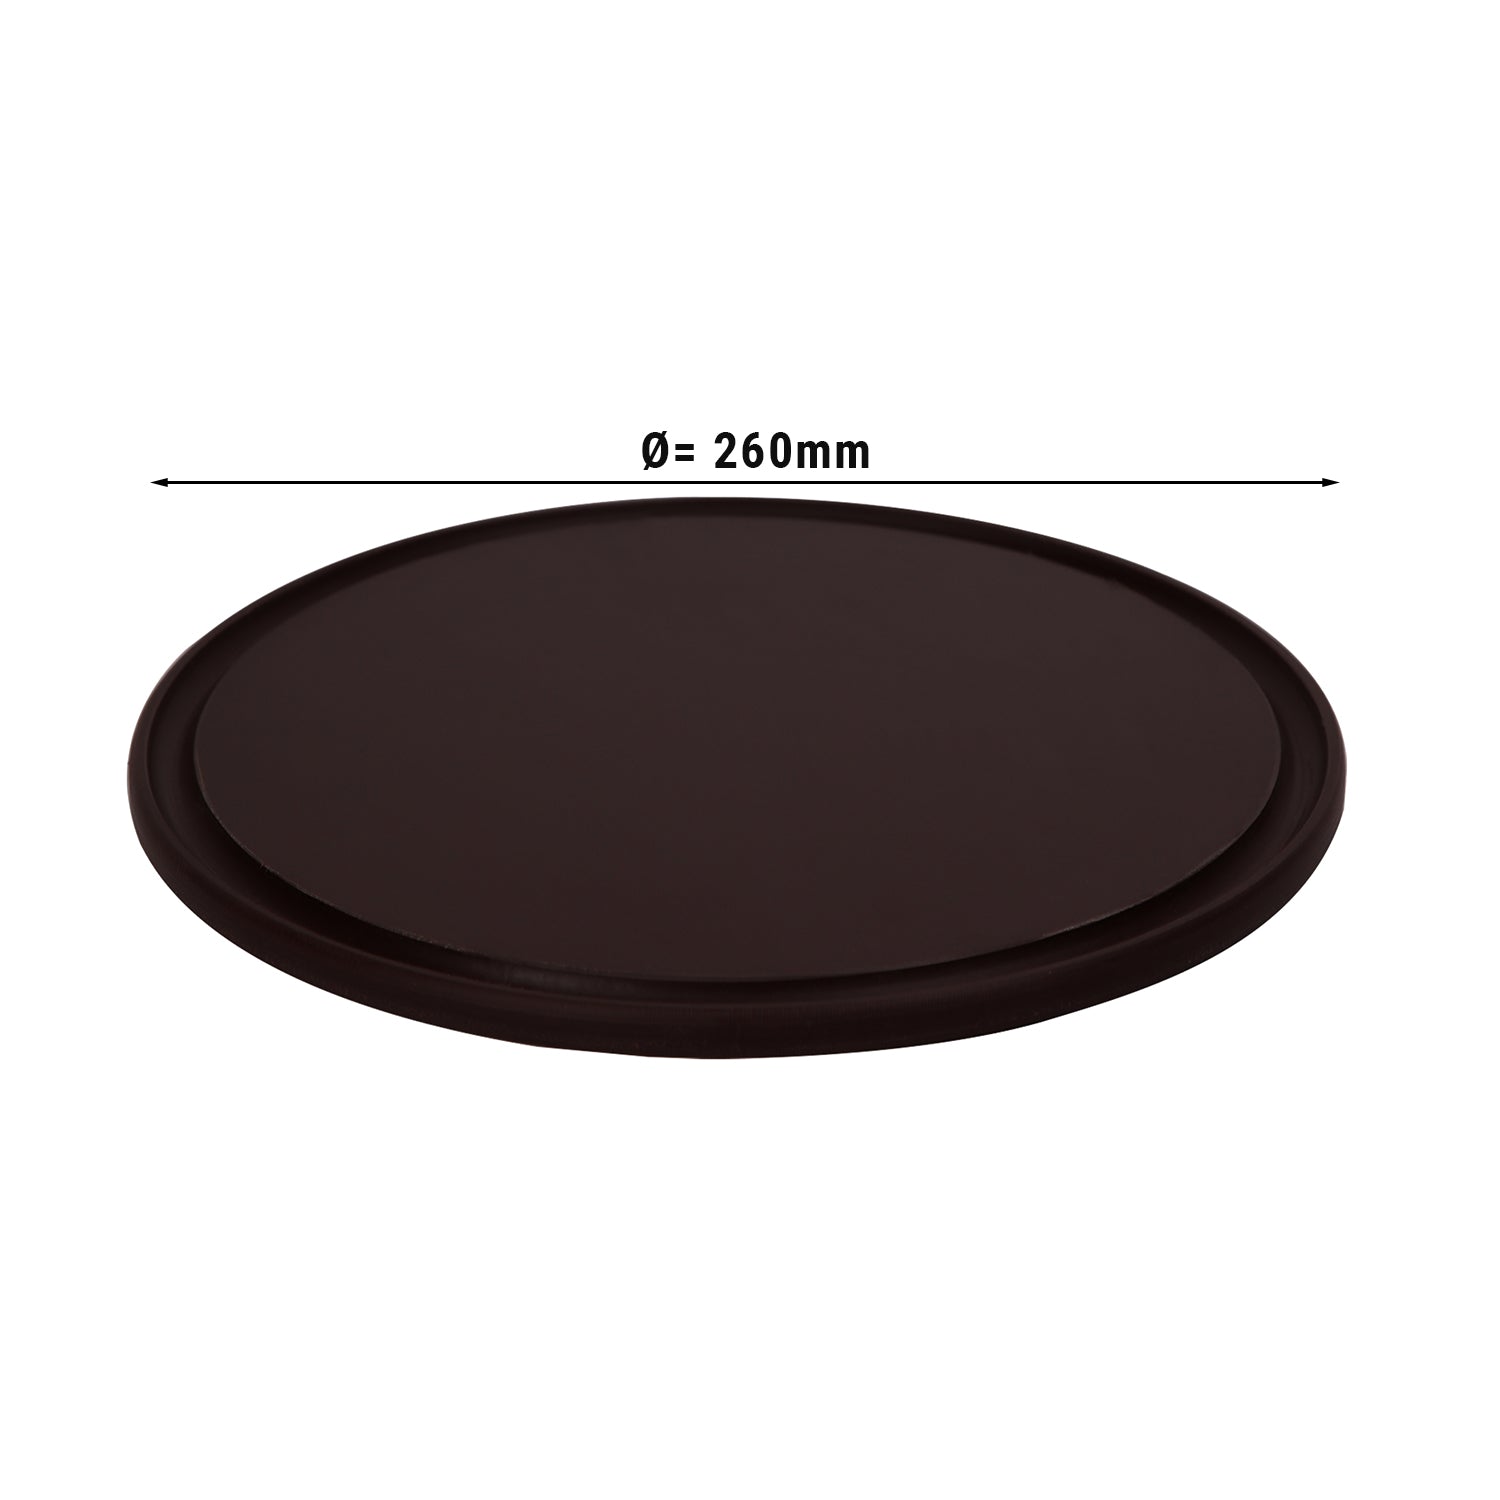 Pizzabakke - 26 cm i diameter